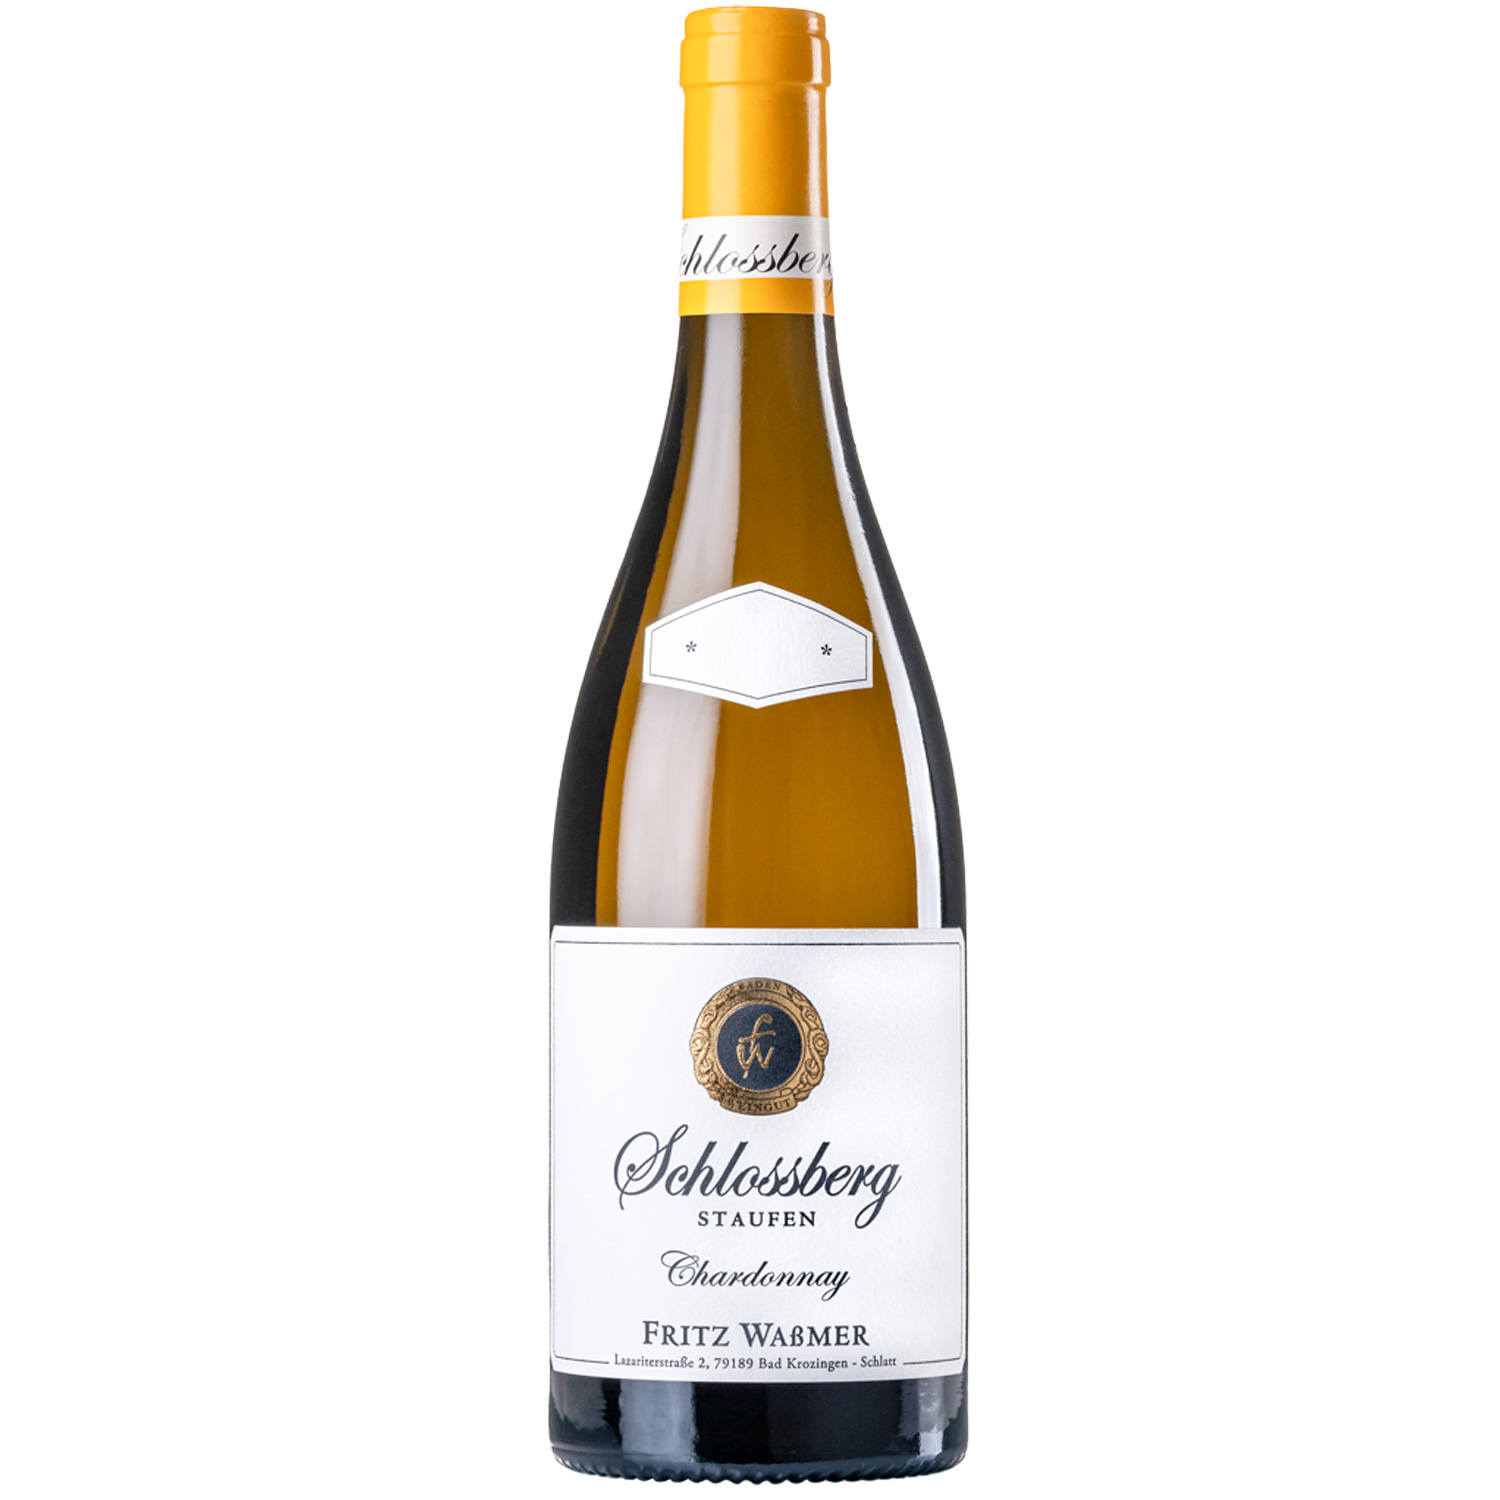 Schlossberg Staufen Chardonnay 2020